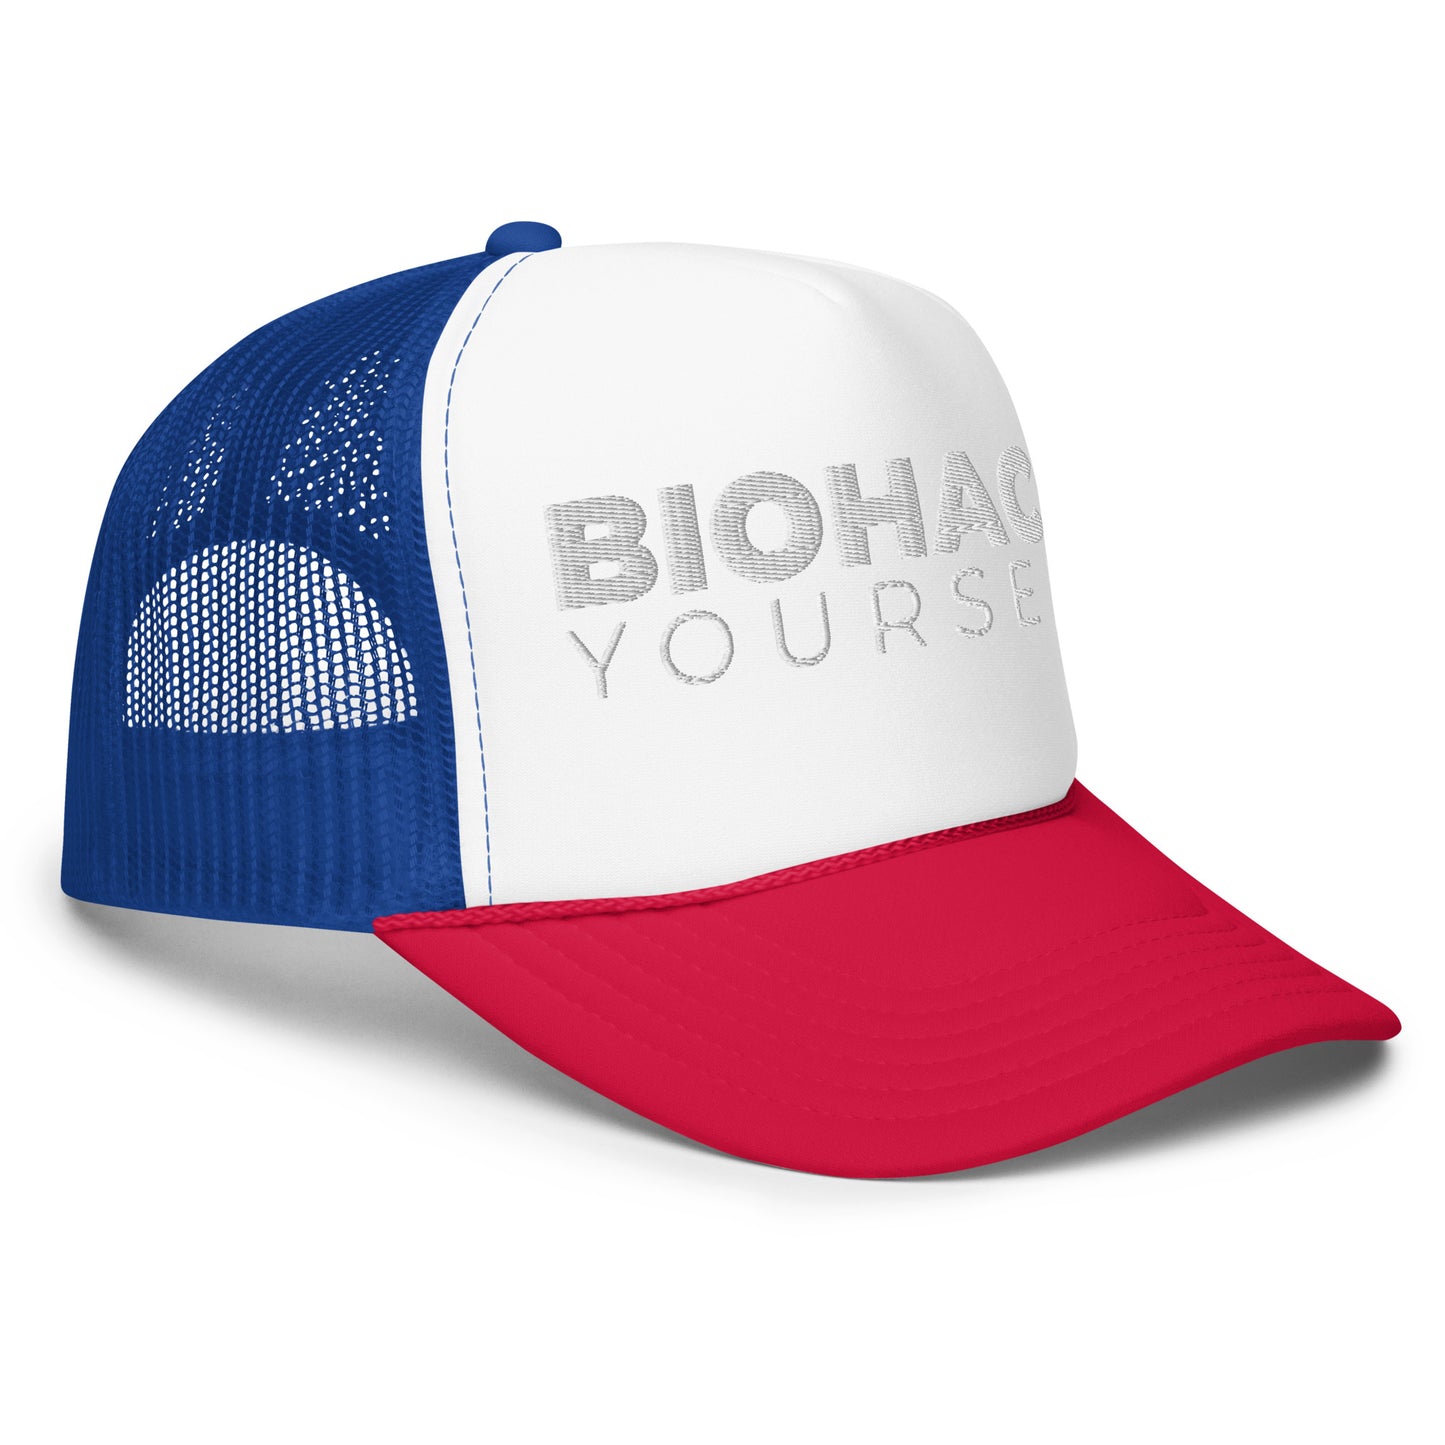 Biohack Yourself - Trucker Cap